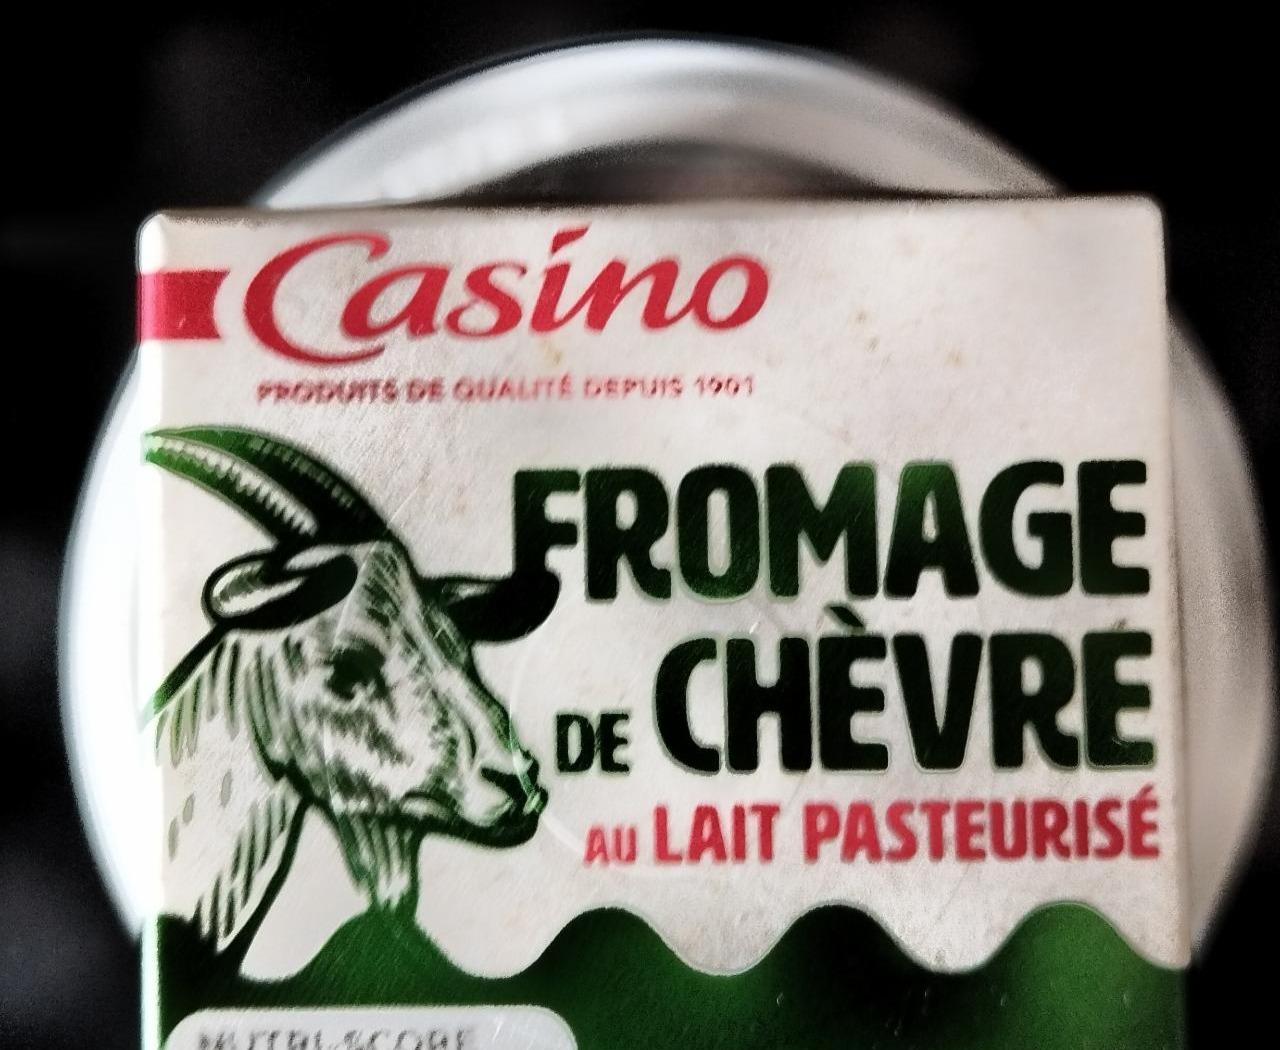 Fotografie - Fromage de Chèvre au lait pasteurisé Casino